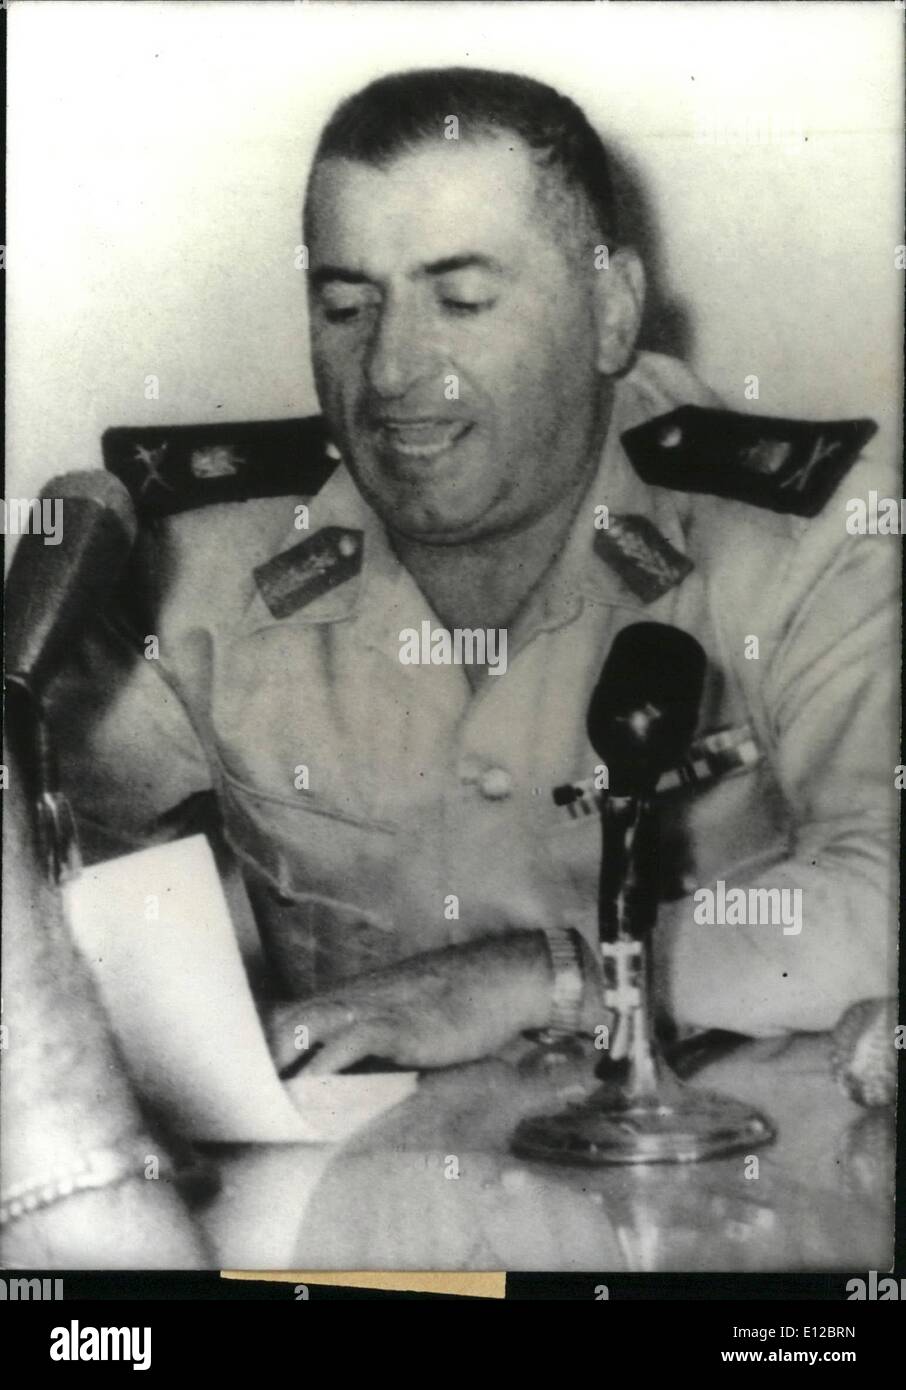 Dic. 09, 2011 - Generale Zahredine comandante in capo dell'esercito siriano : la foto mostra il generale Abdel Karim Zahredine, il nuovo comandante in capo dell'esercito siriano, la radiodiffusione di un discorso. Foto Stock